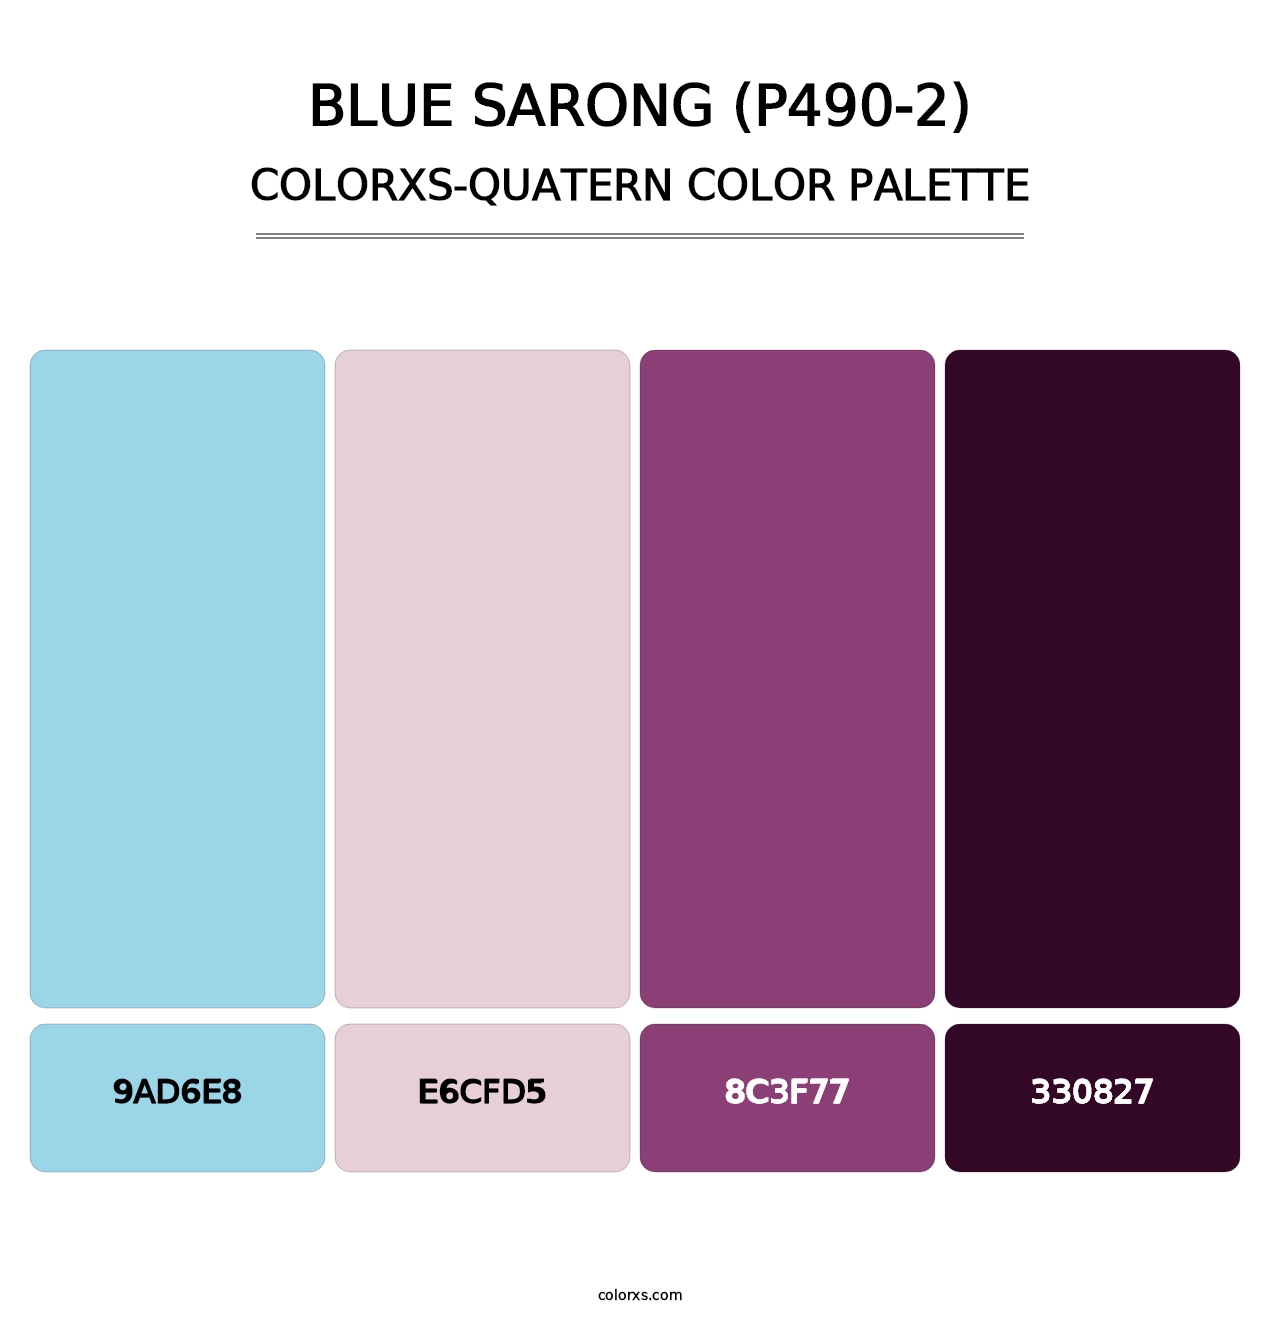 Blue Sarong (P490-2) - Colorxs Quatern Palette